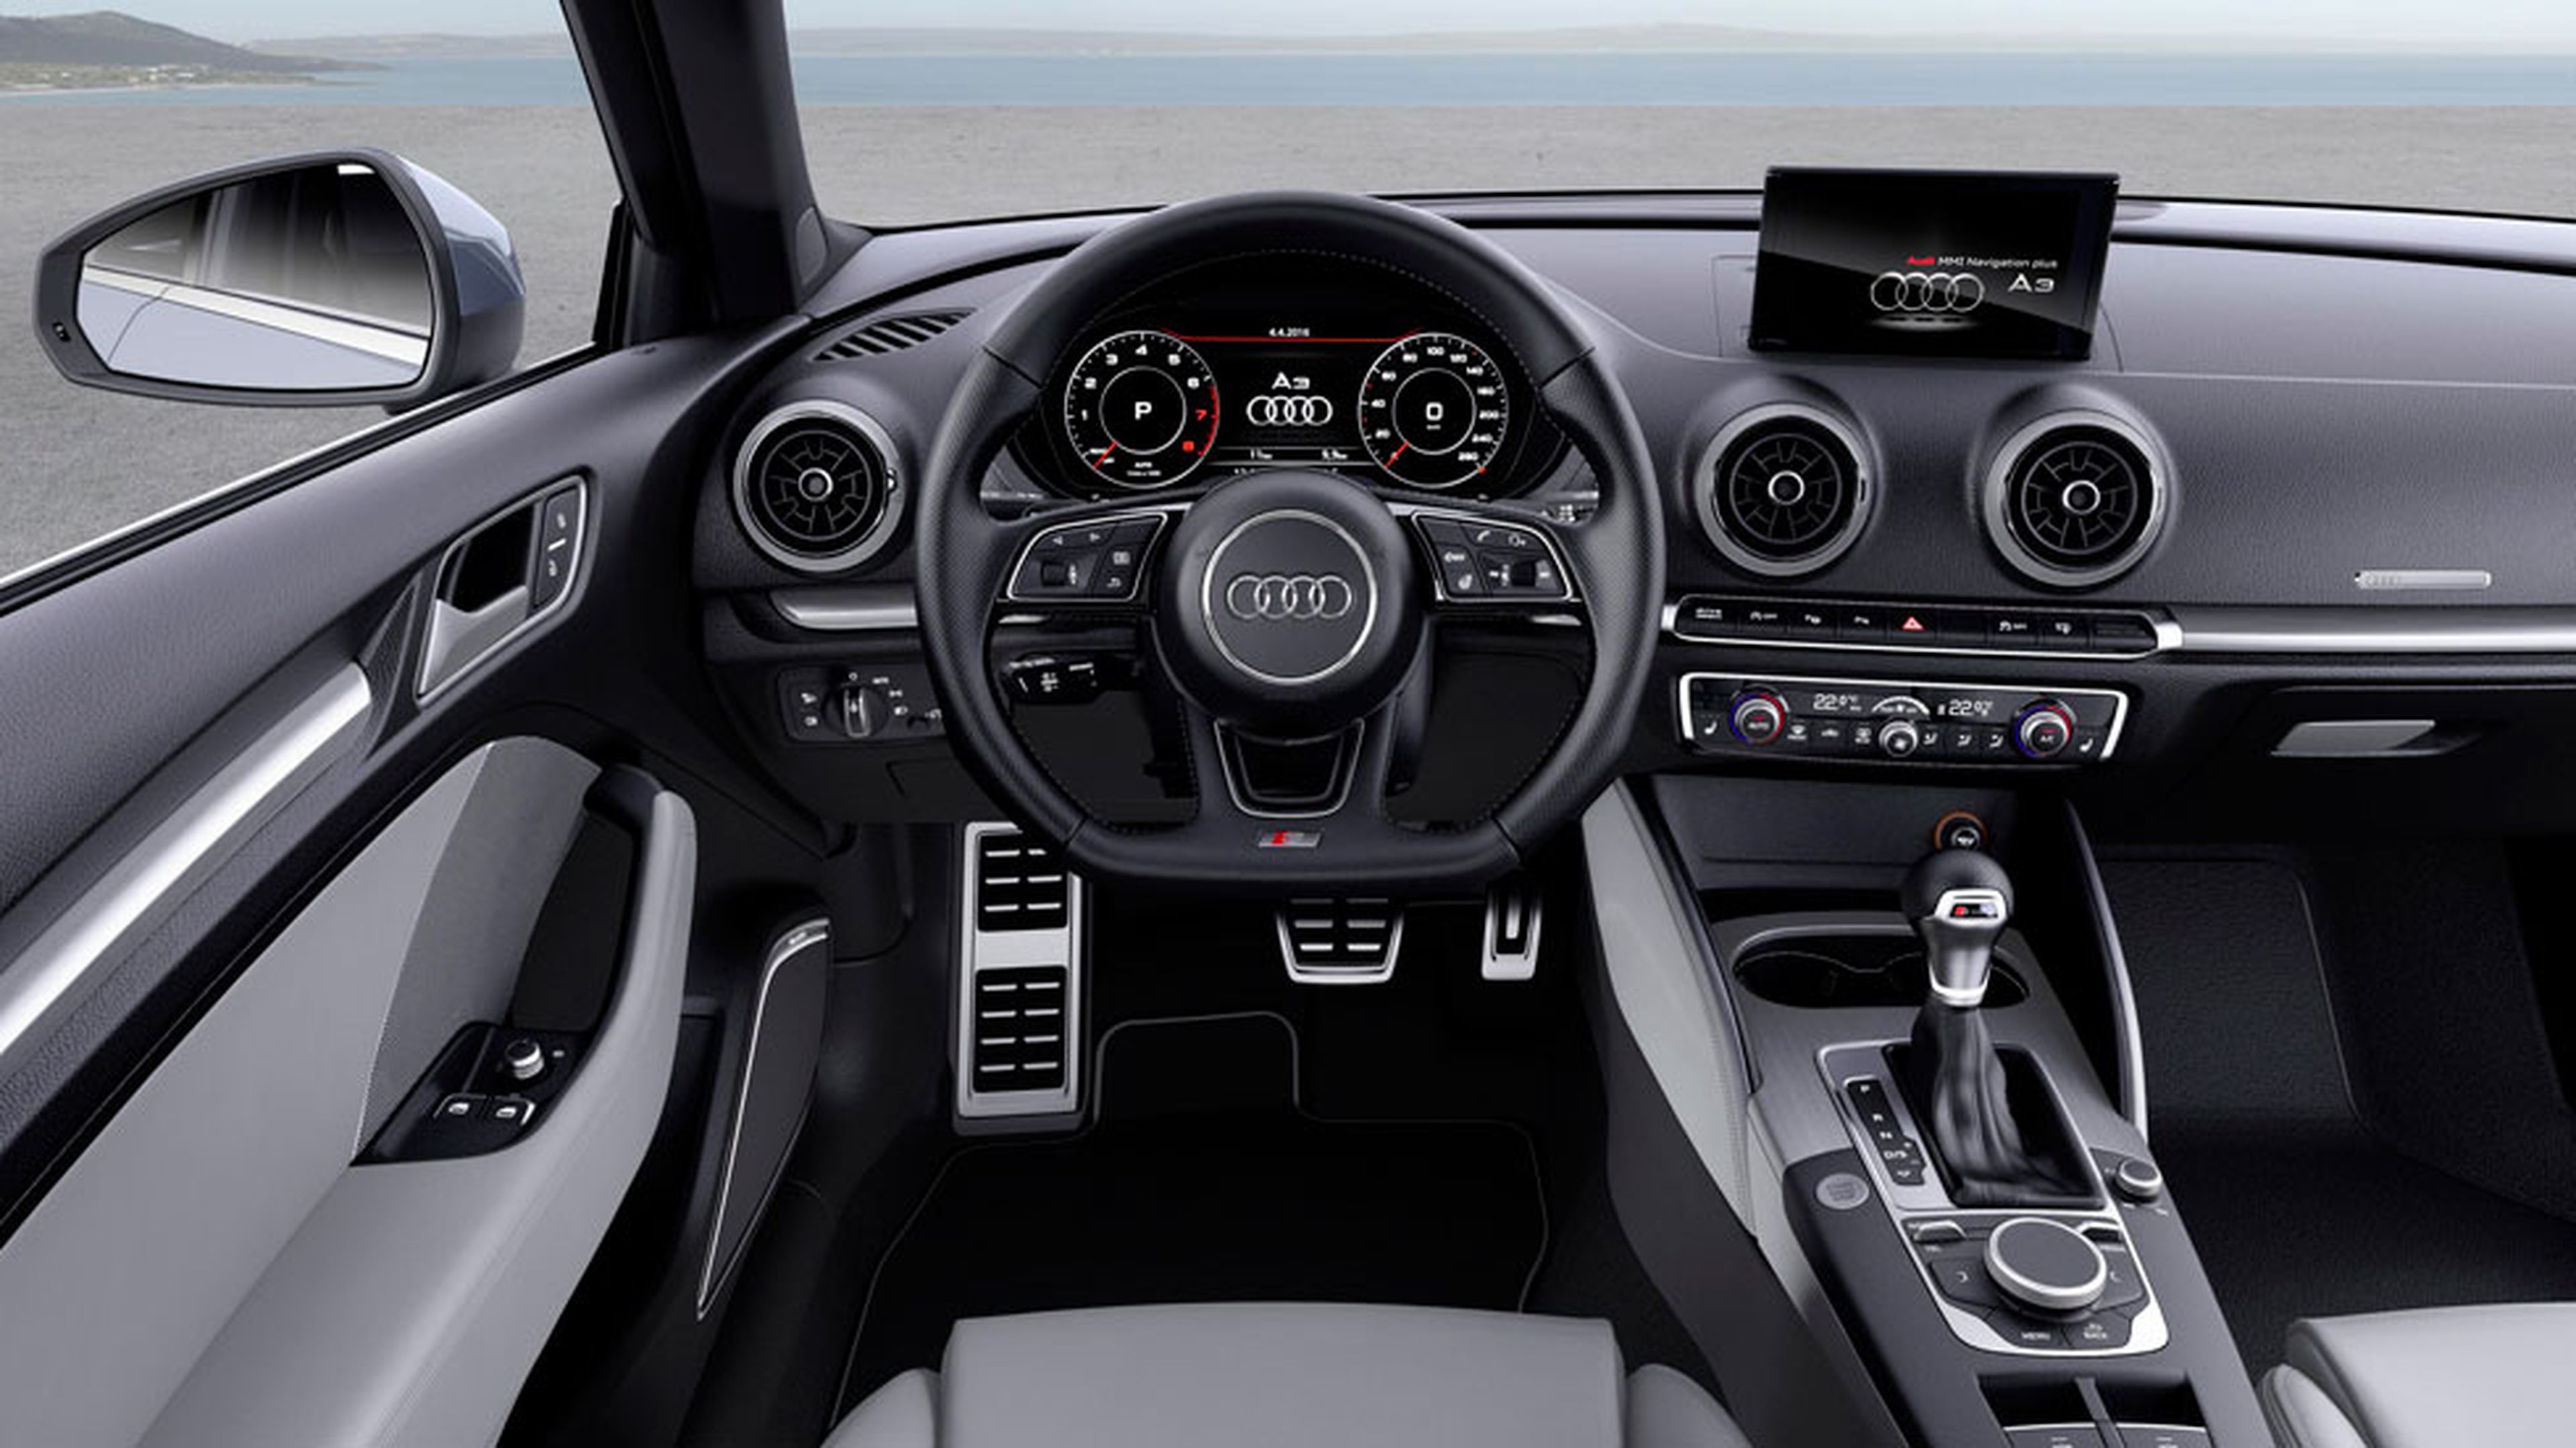 Tres secretos del interior del Audi A3